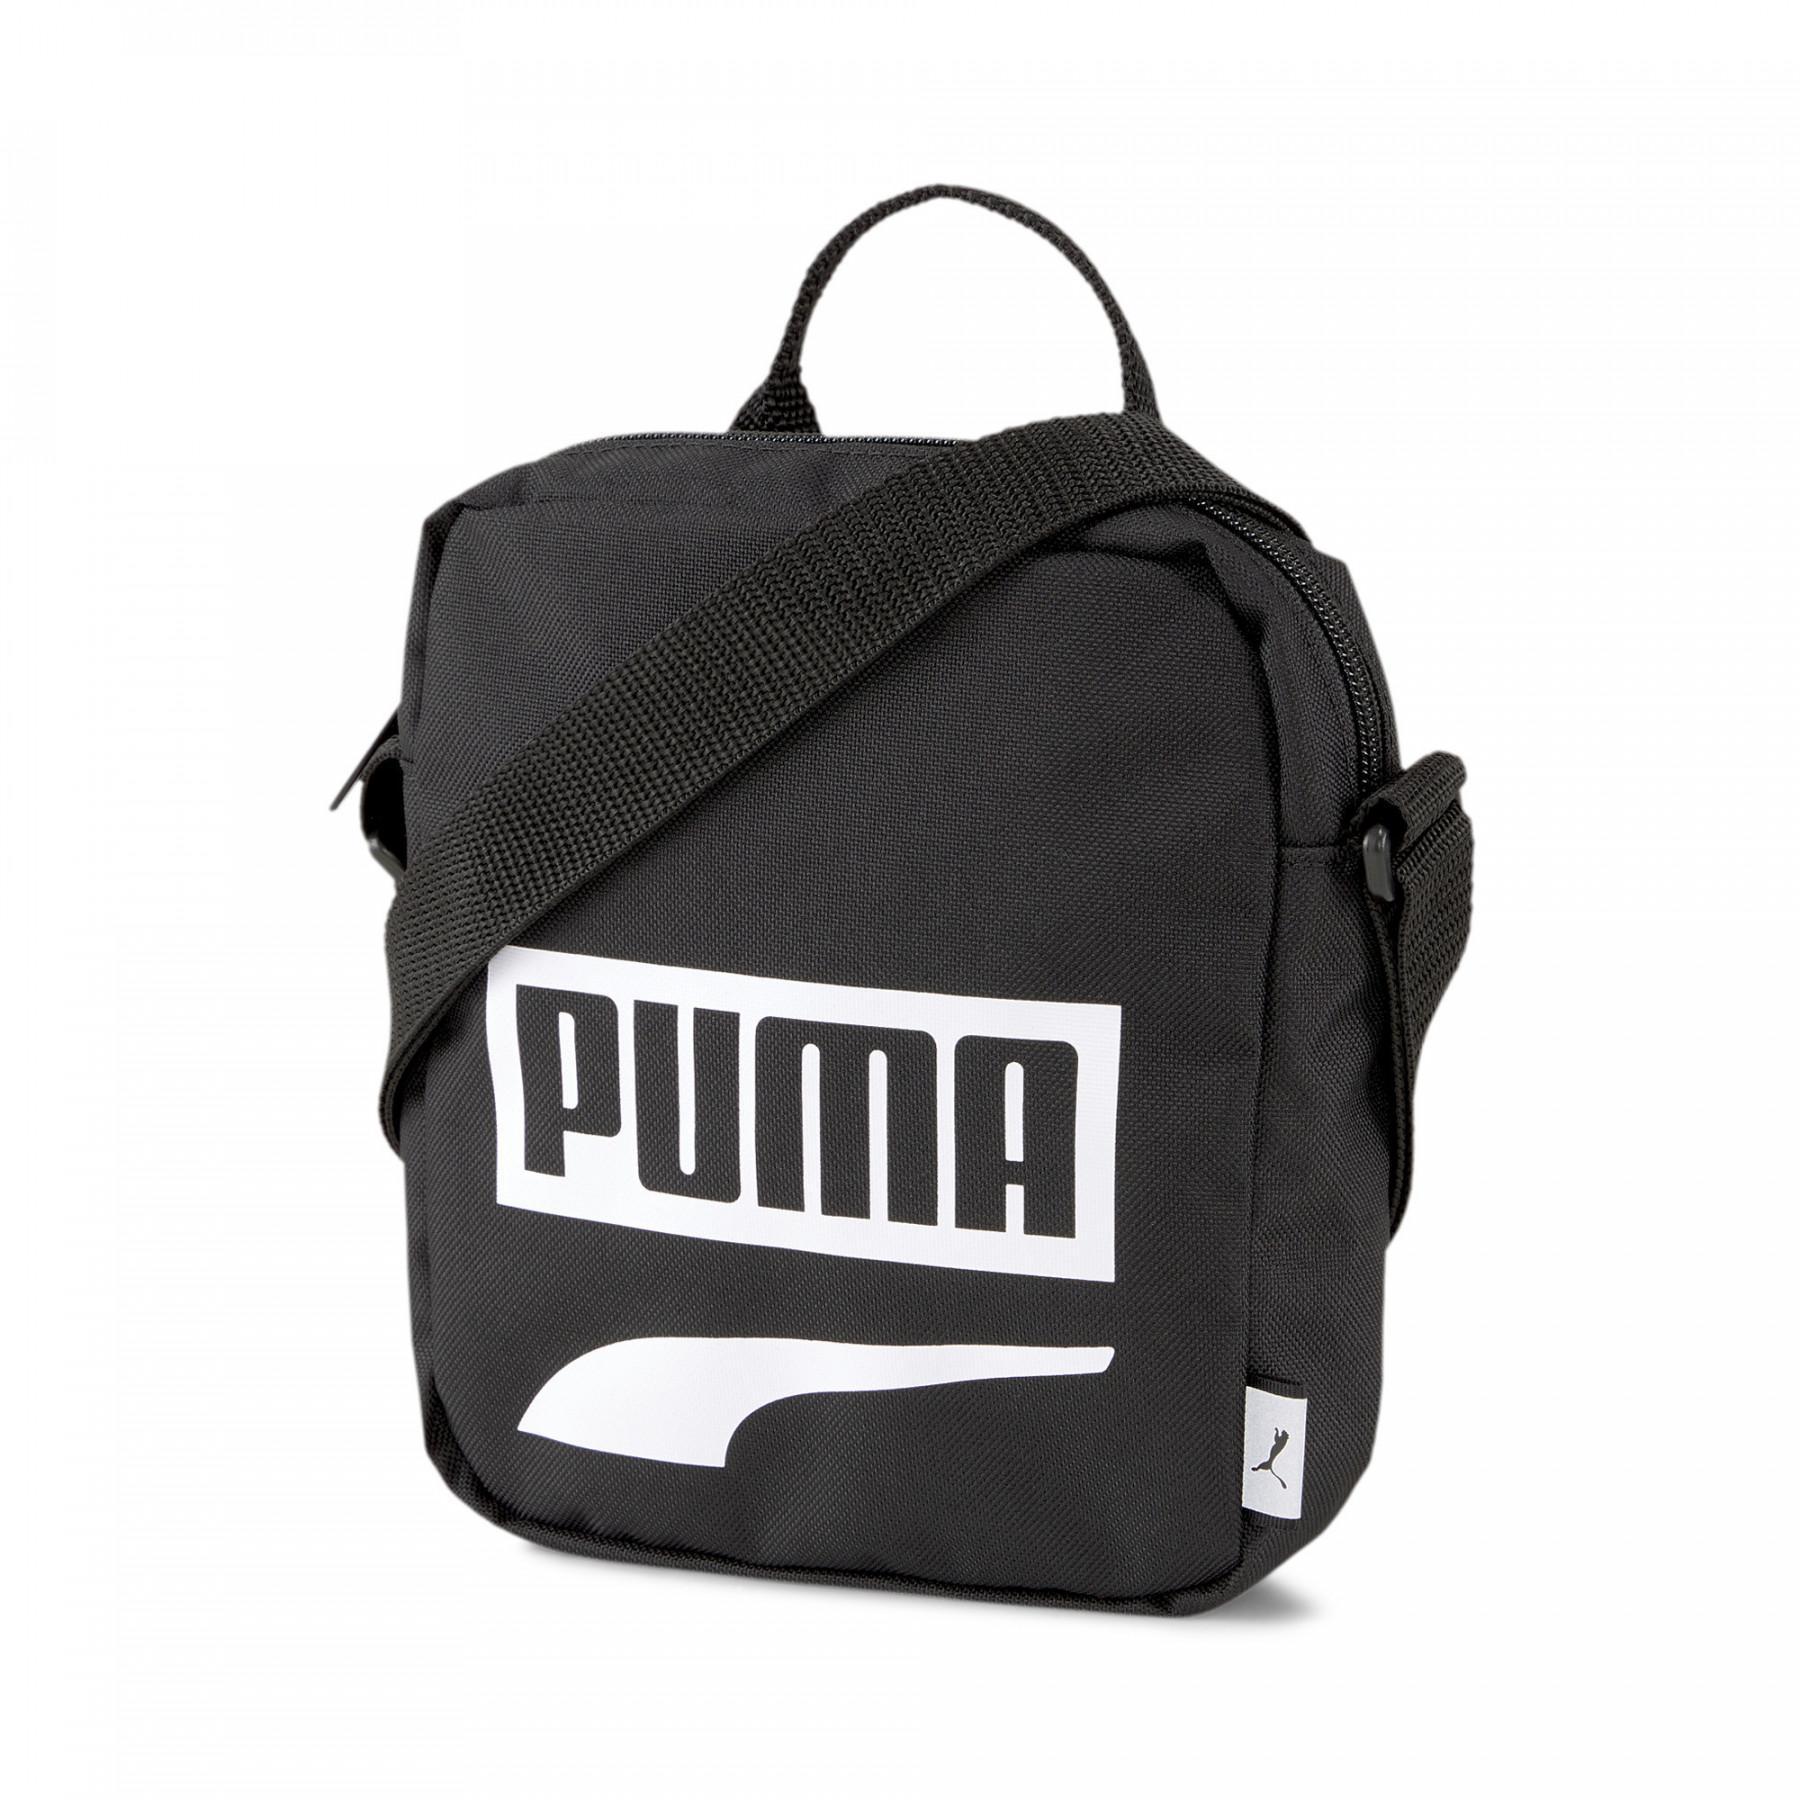 Borsa Puma Plus Portable II